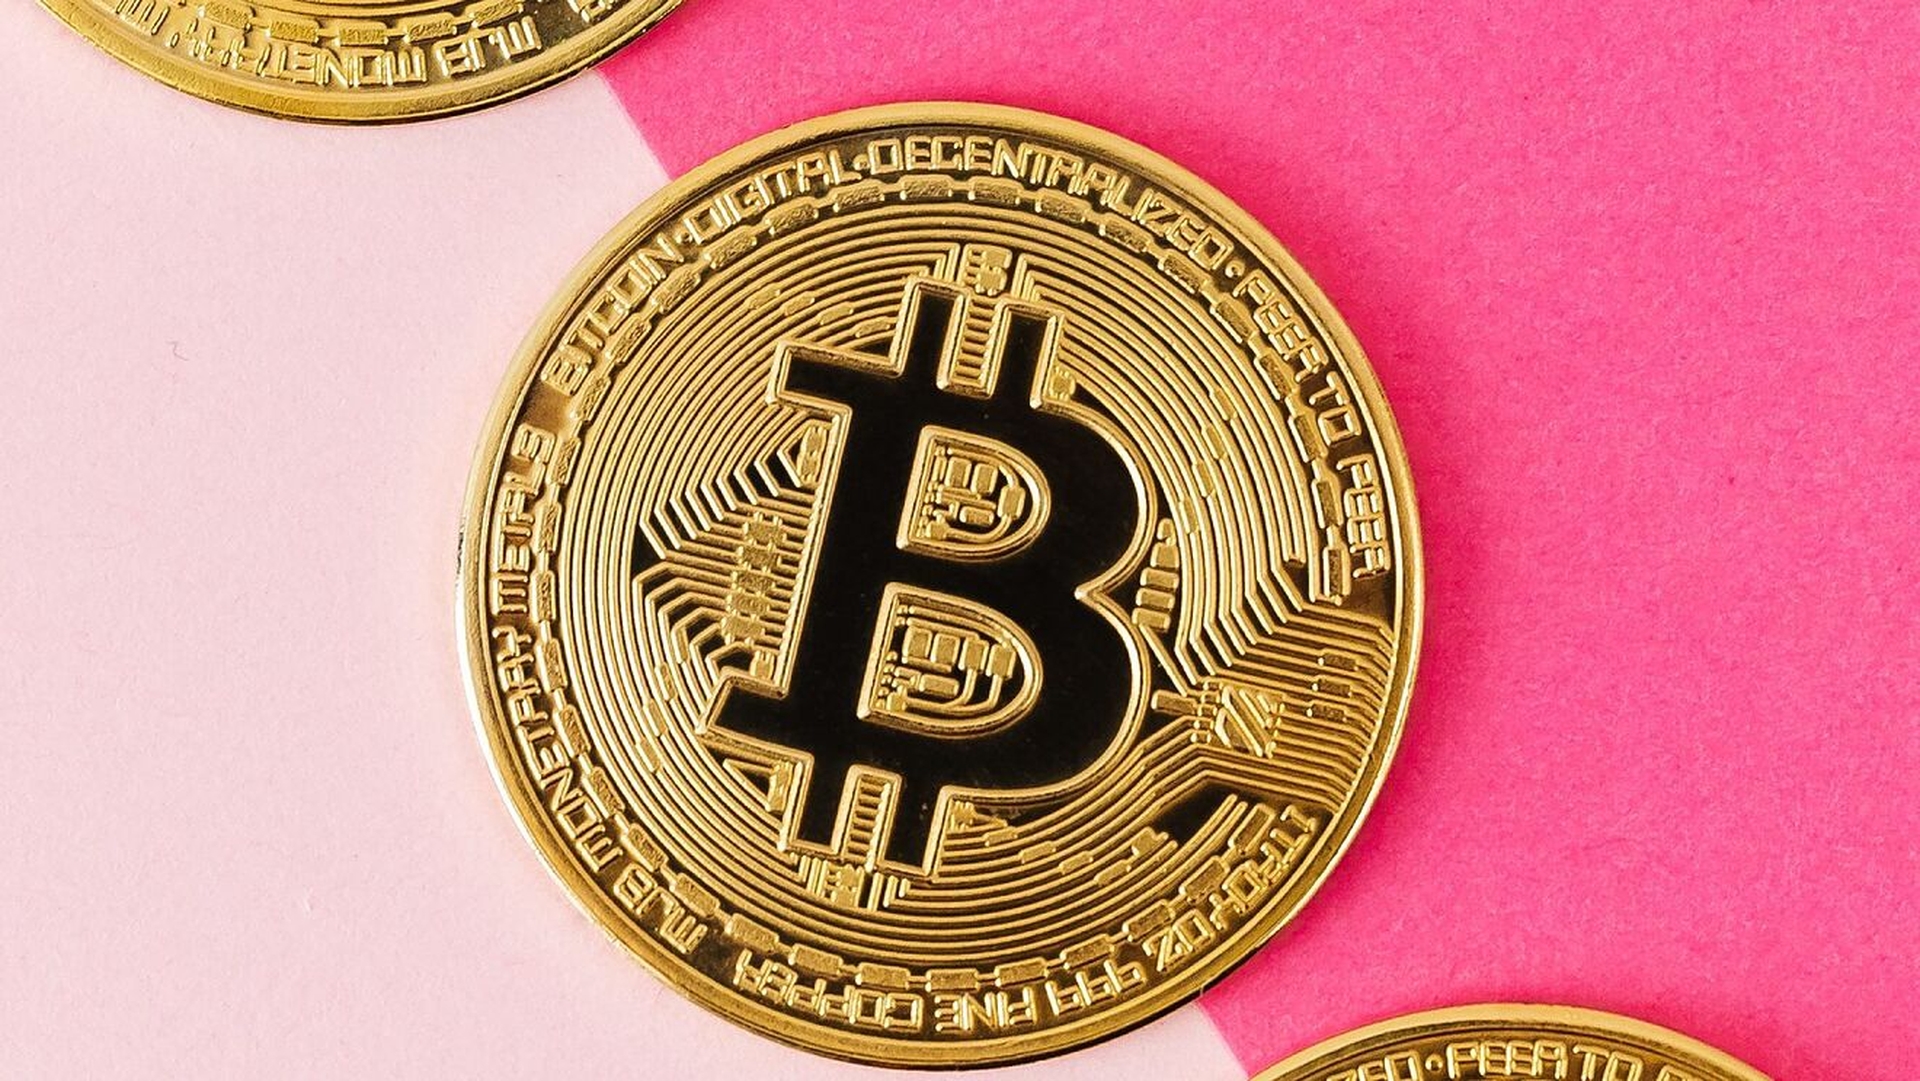 W tym artykule omówimy, dlaczego Bitcoin się zawiesza, ponieważ największa kryptowaluta na rynku spadła na gorsze.